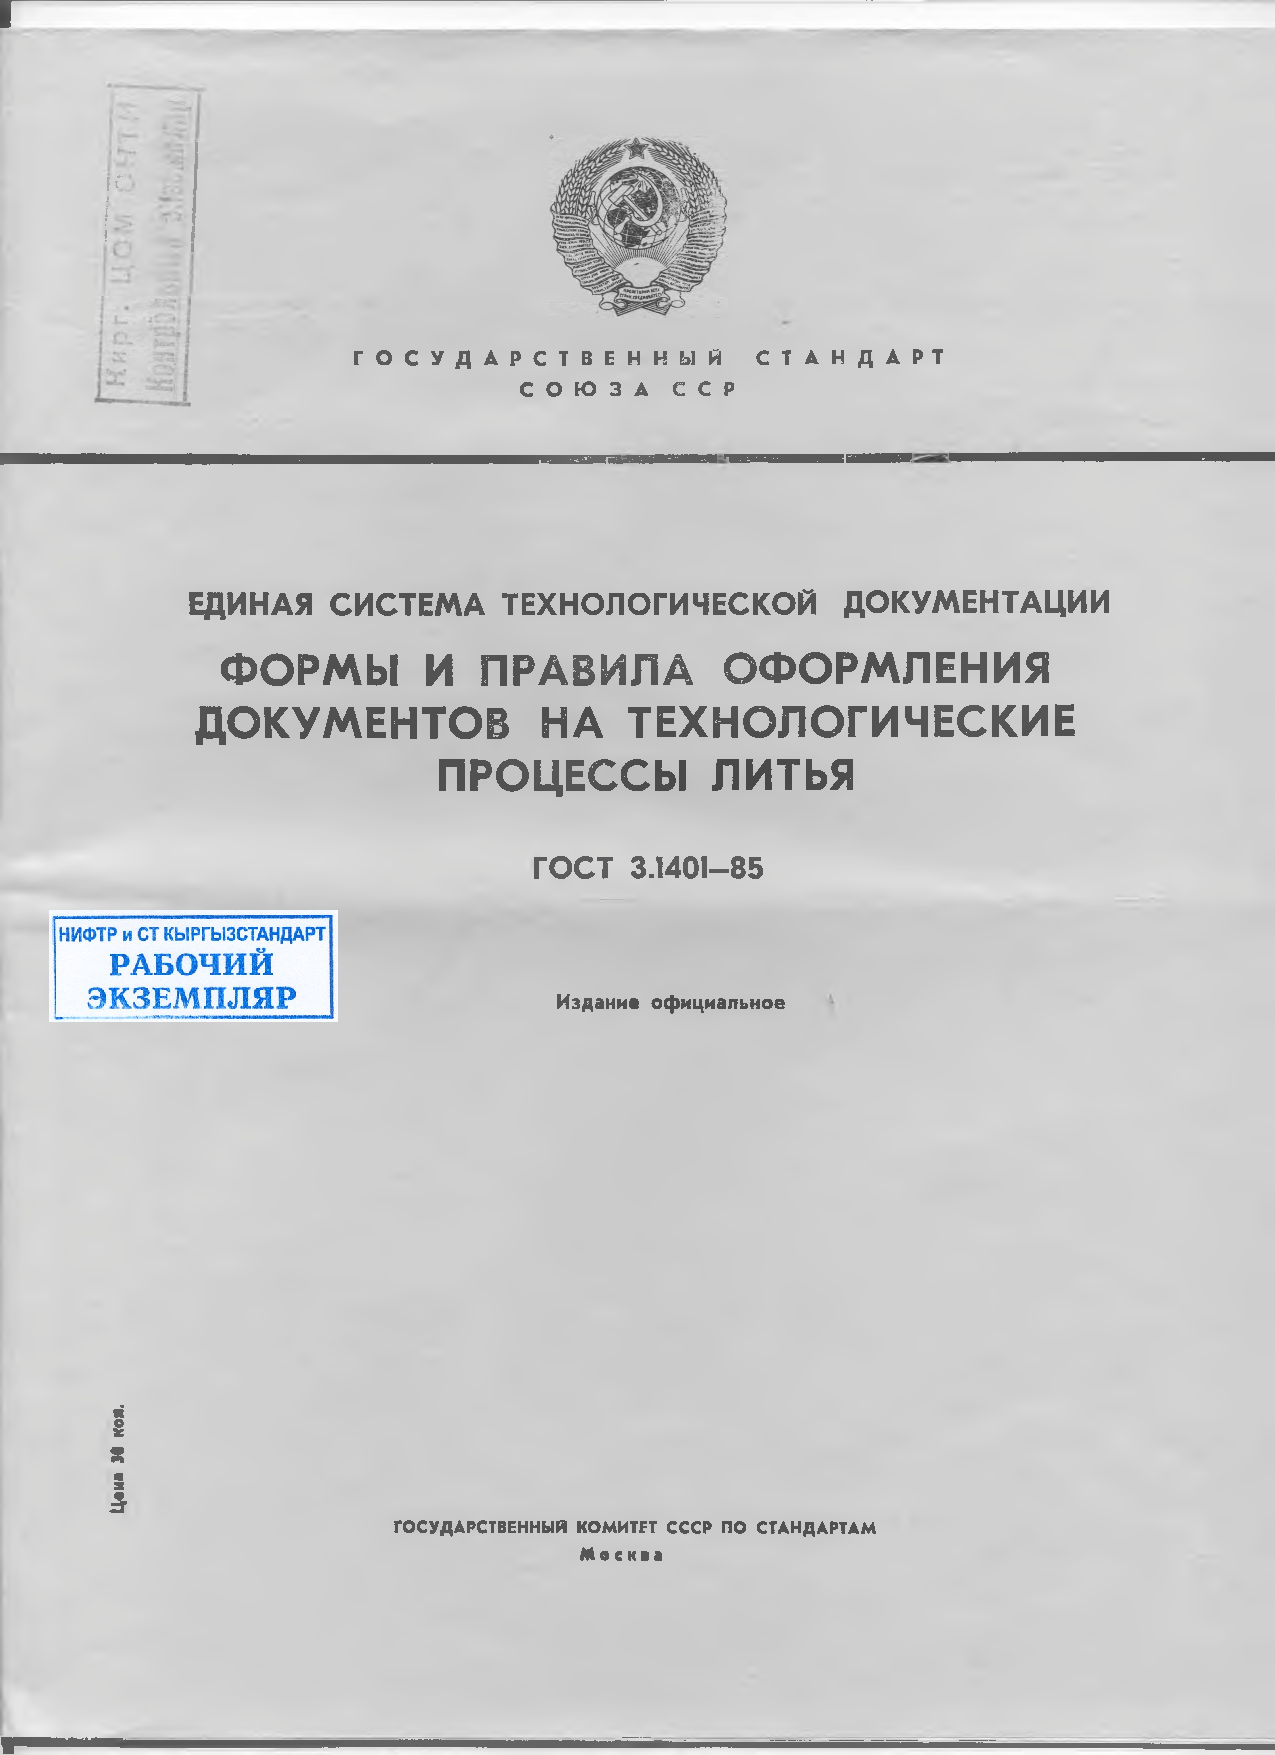 Единая система технологической документации. Формы и правила оформления документов на технологические процессы литья